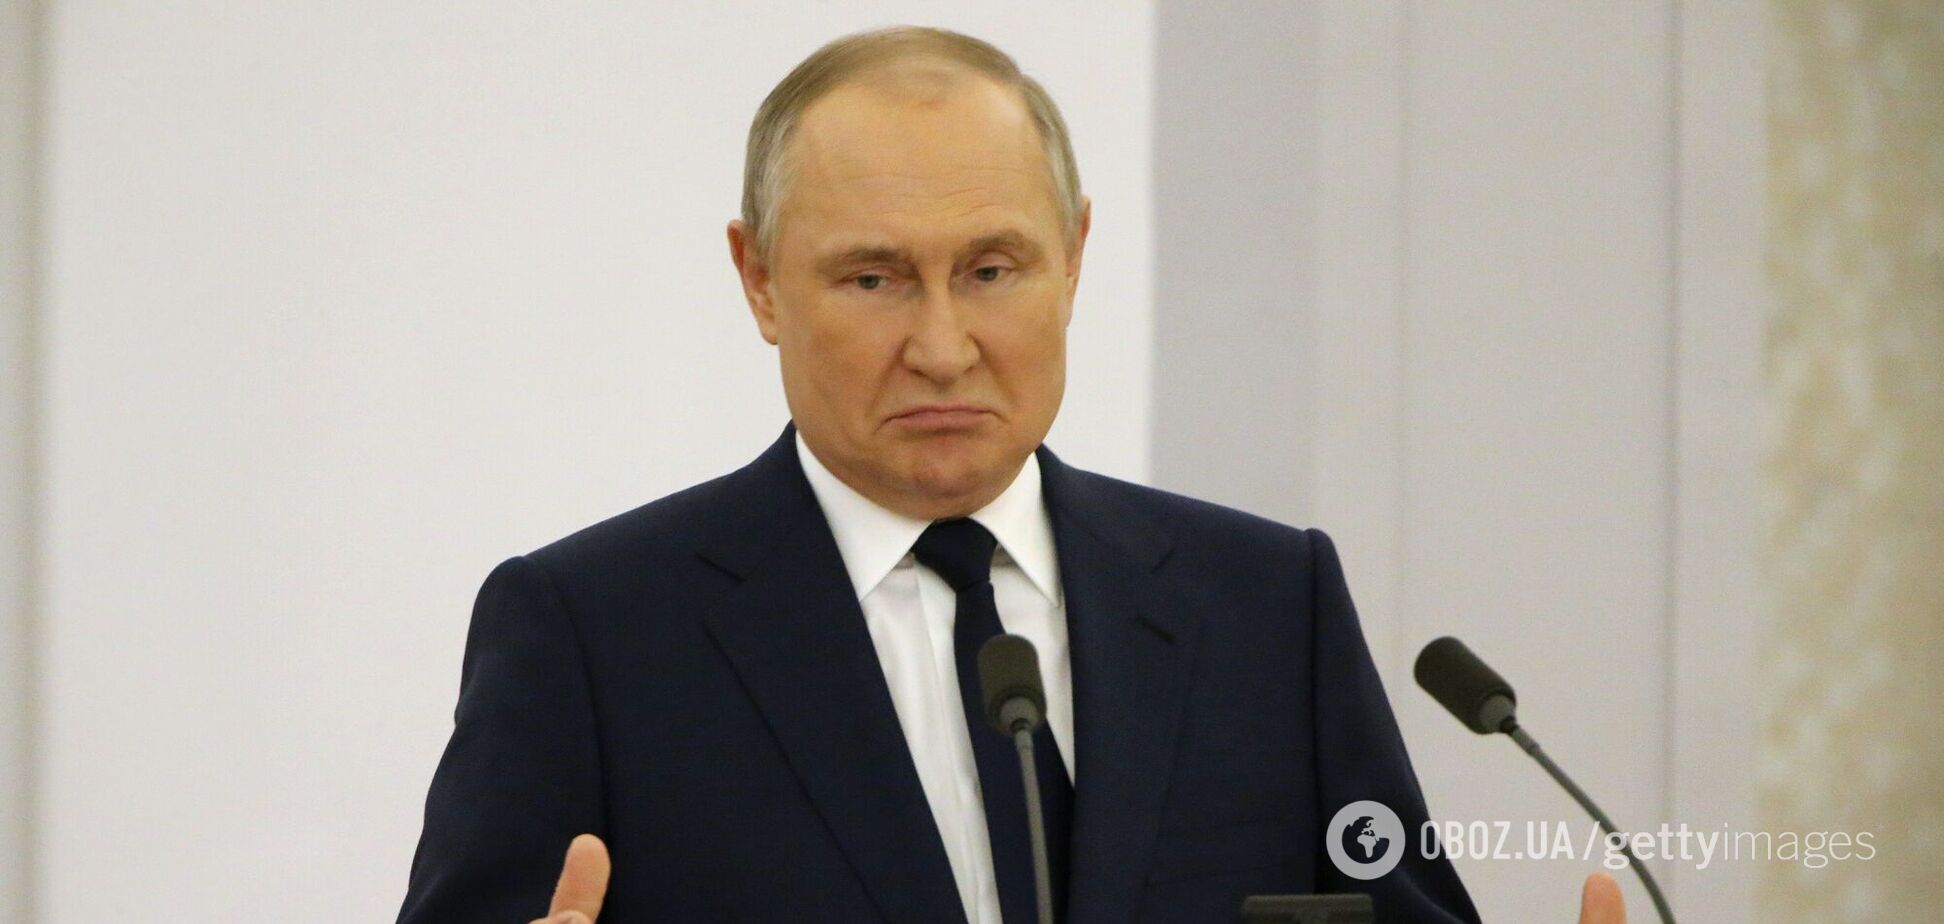 Американский политолог рассказала о странном запахе от Путина: он был как 'свежевыстиранный' и ничего не ел